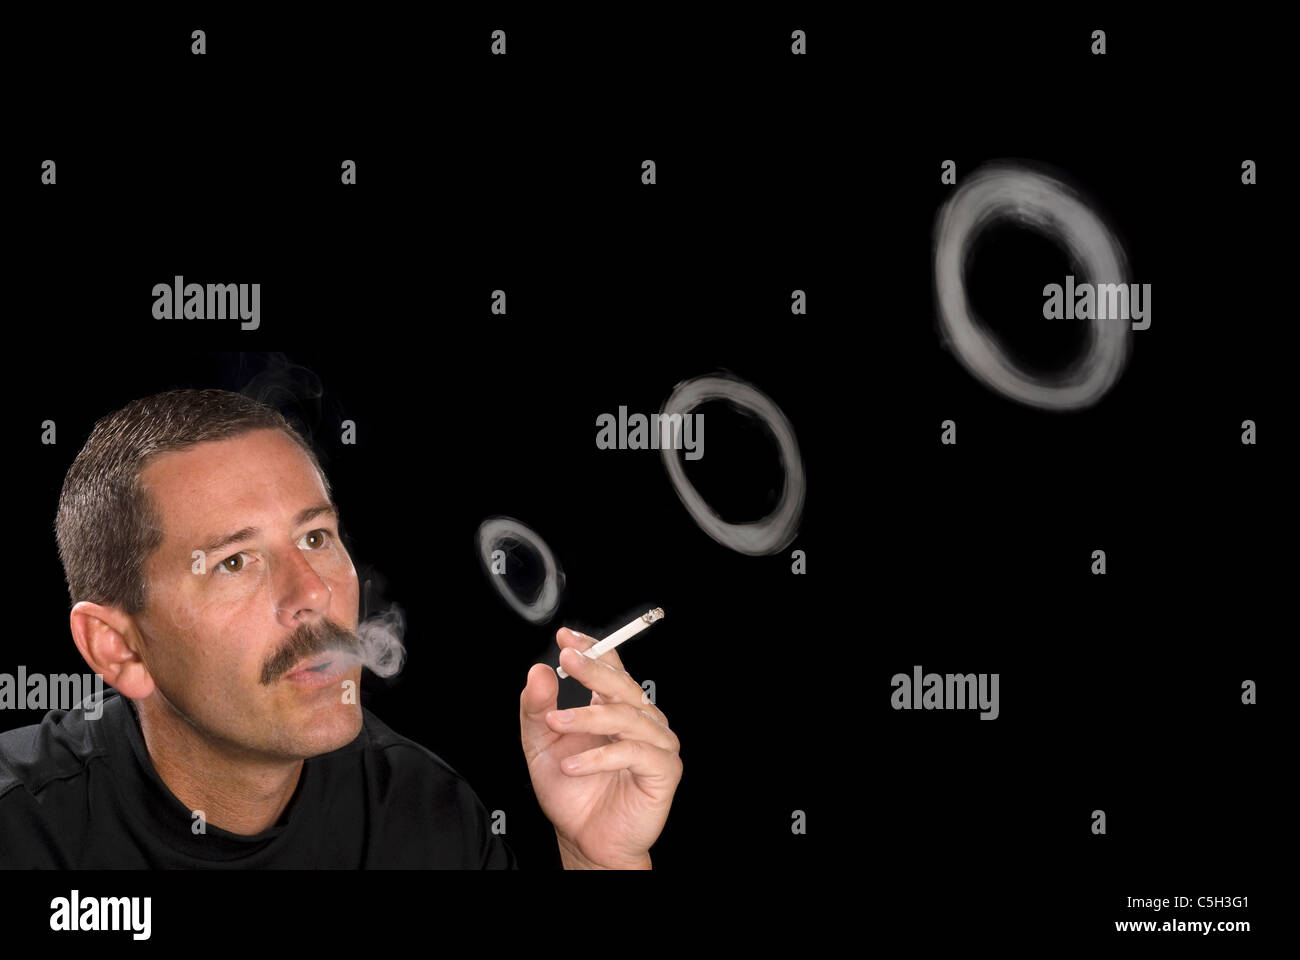 Un homme fume une cigarette coups des ronds de fumée contre une toile de fond noir. Banque D'Images